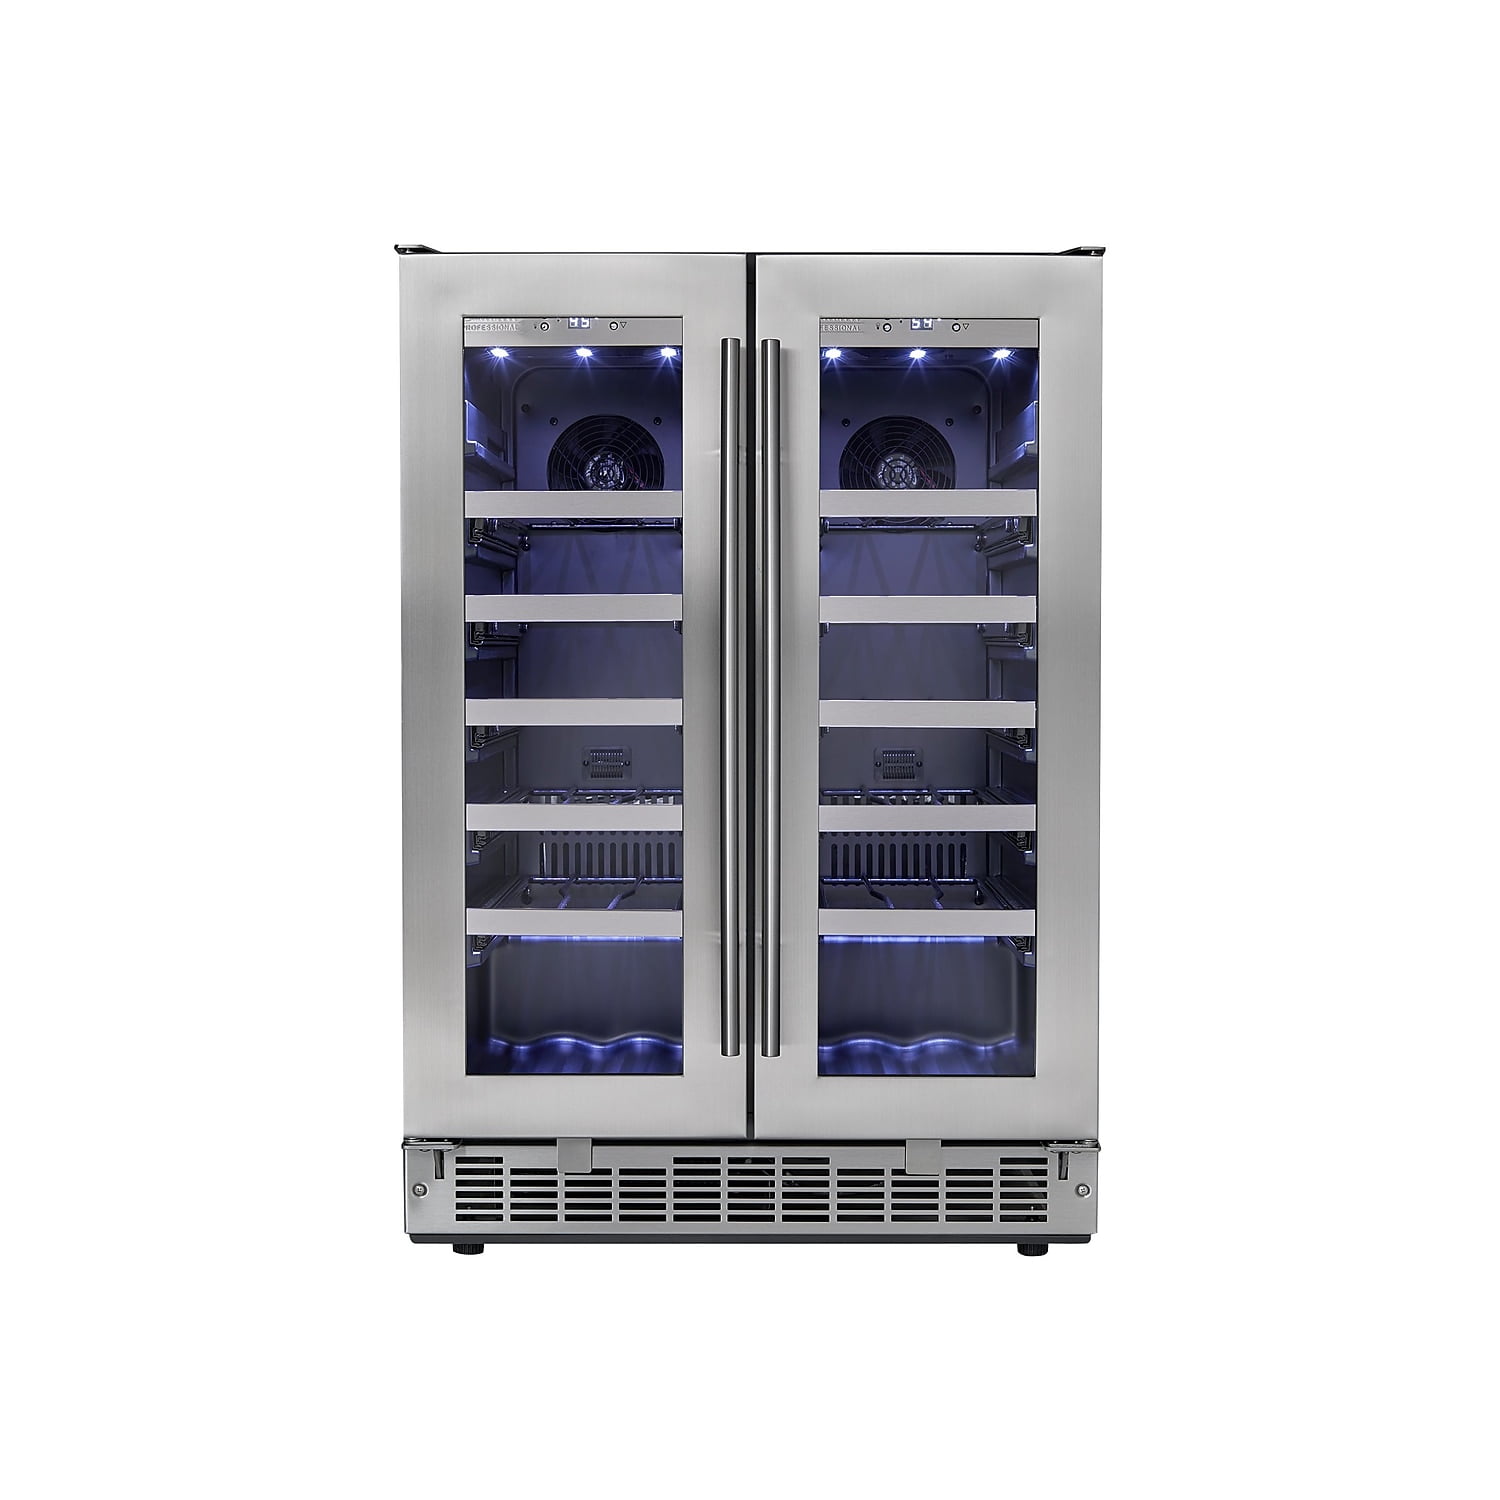 Dwc047d1bsspr 42-bottle Built-in French Door Wine Cooler